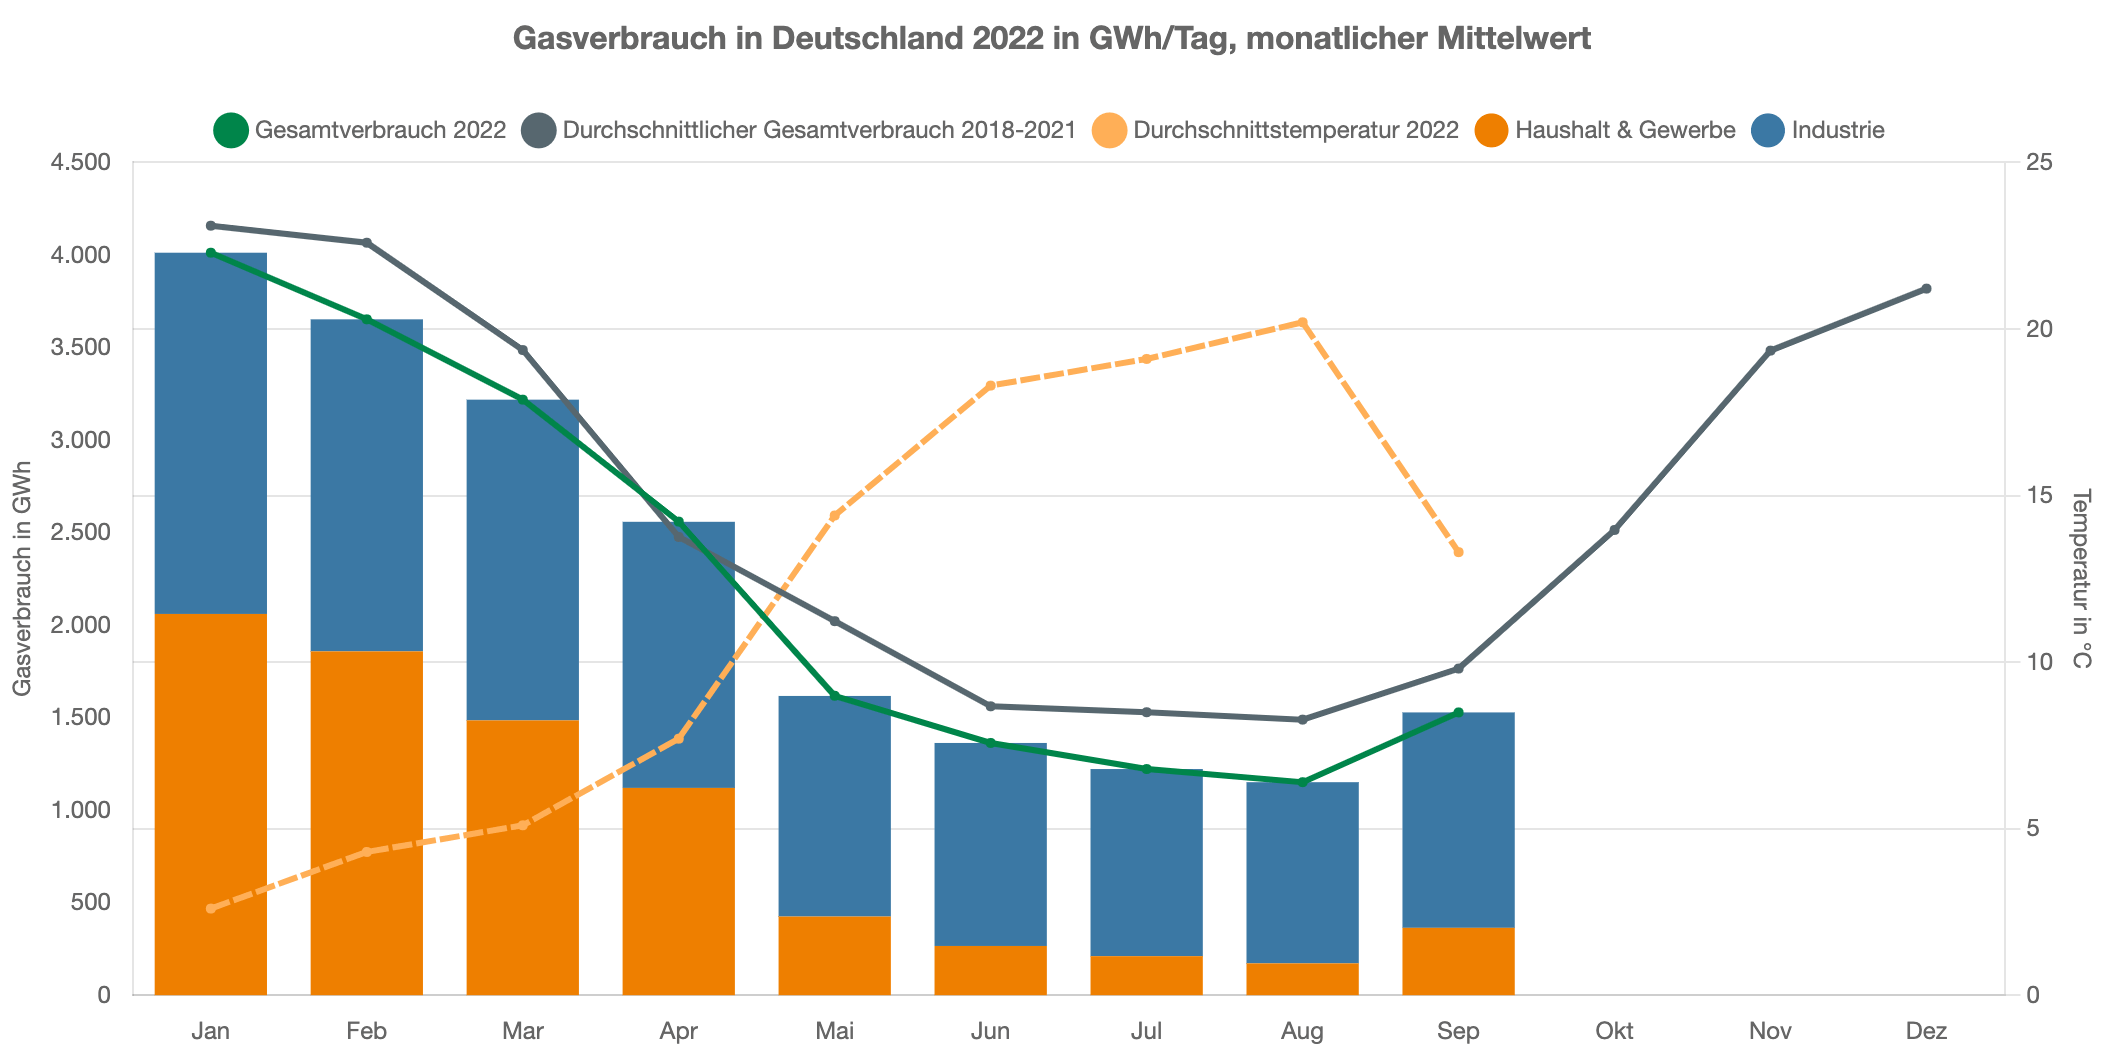 Der Gasverbrauch im Jahr 2022 war bislang geringer als der Durchschnittsverbrauch für die Jahre 2018 bis 2021